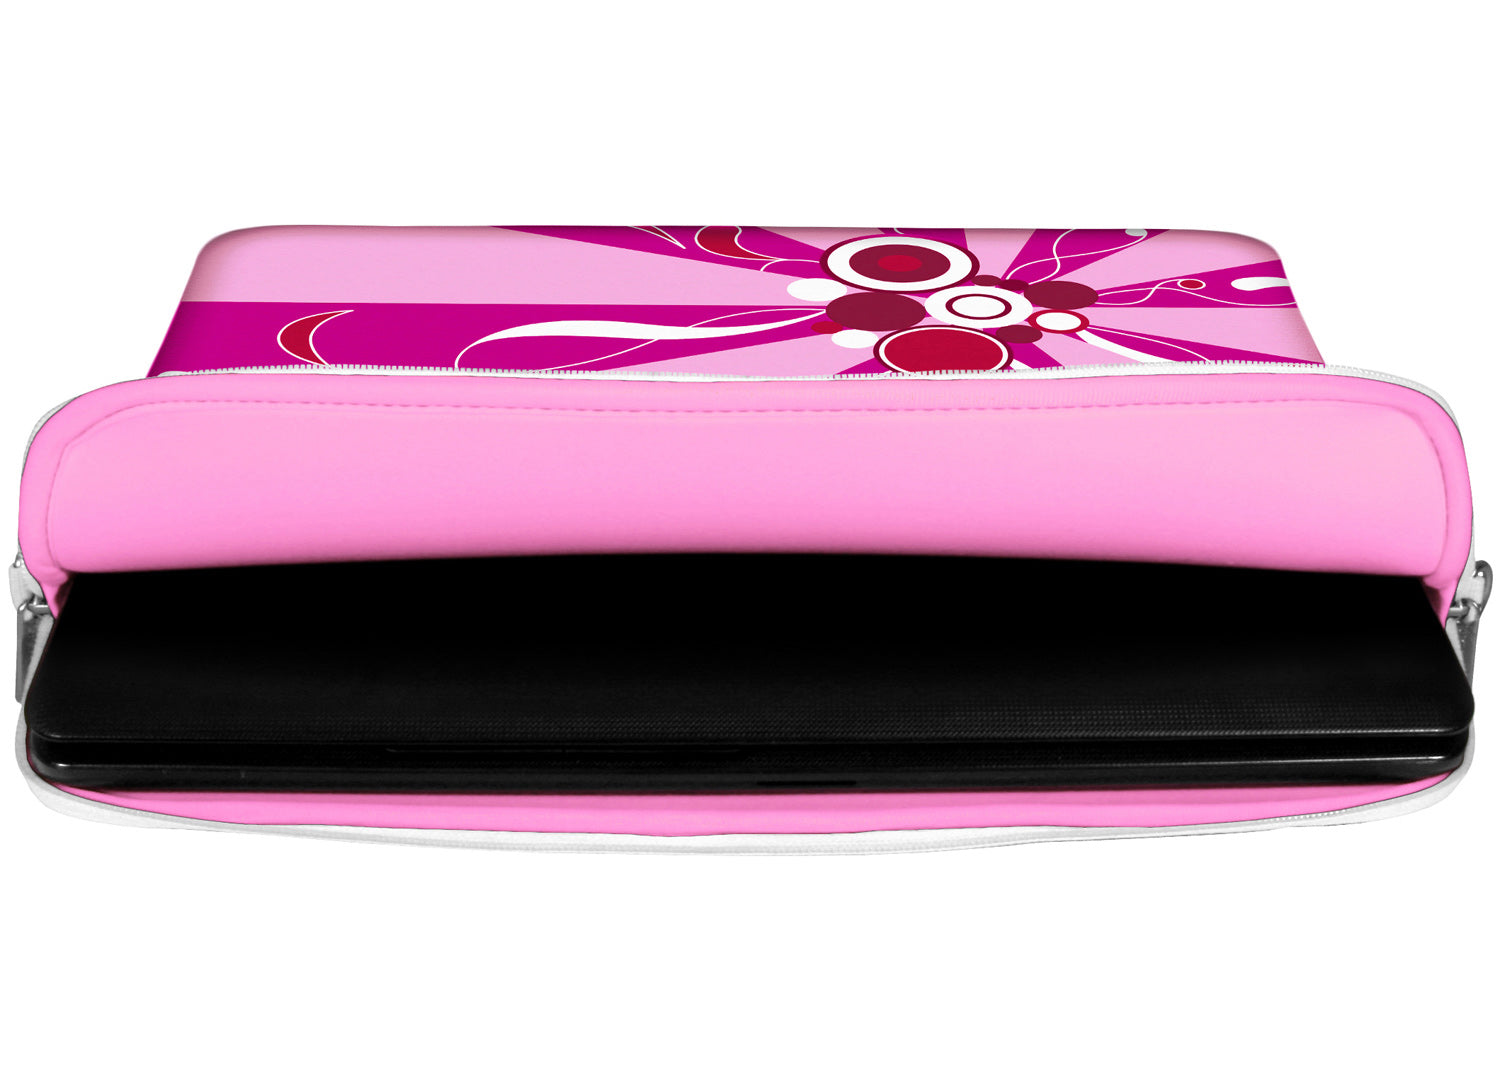 Innenansicht mit Schutzlippen der LS155 Magic Rays Laptoptasche in rosa aus wasserabweisendem Neopren